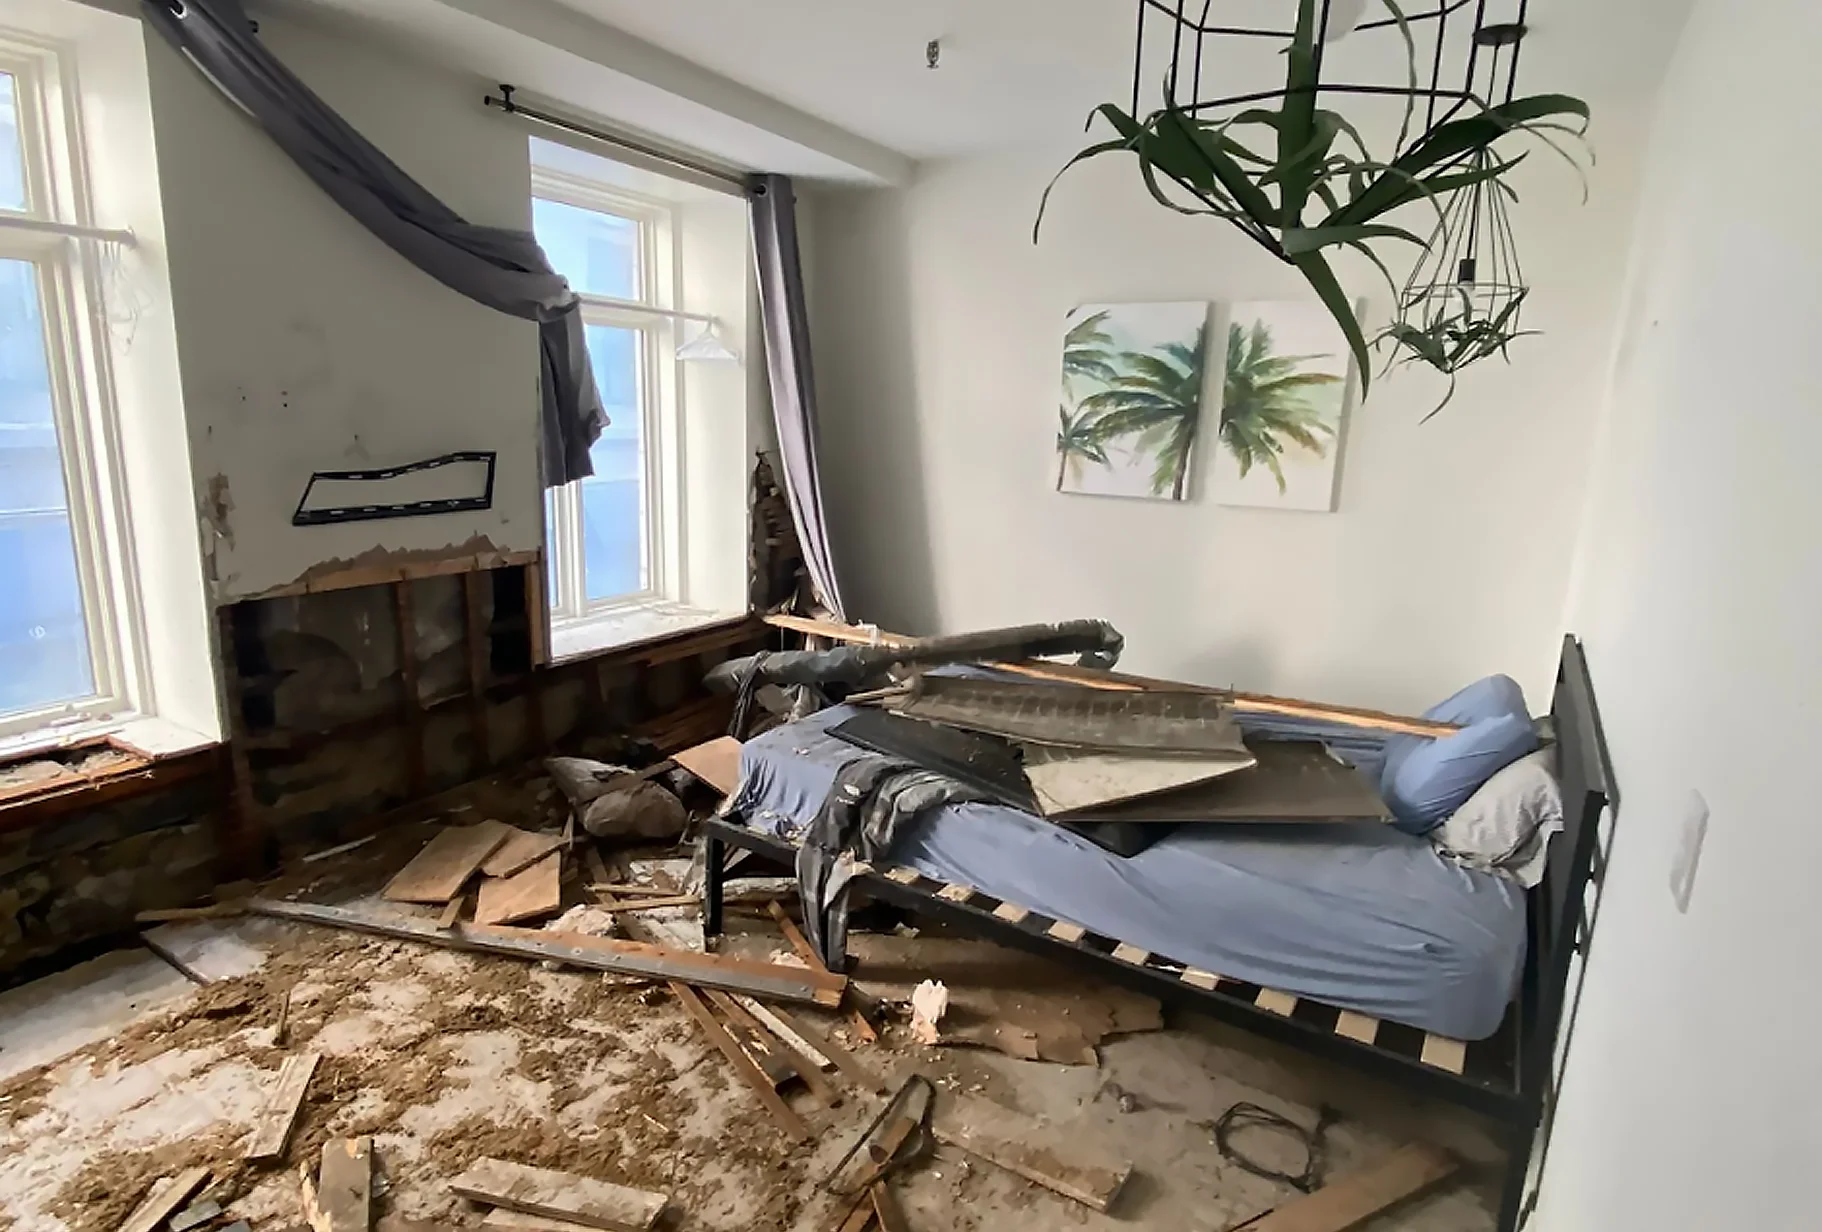 Destroyed Living room